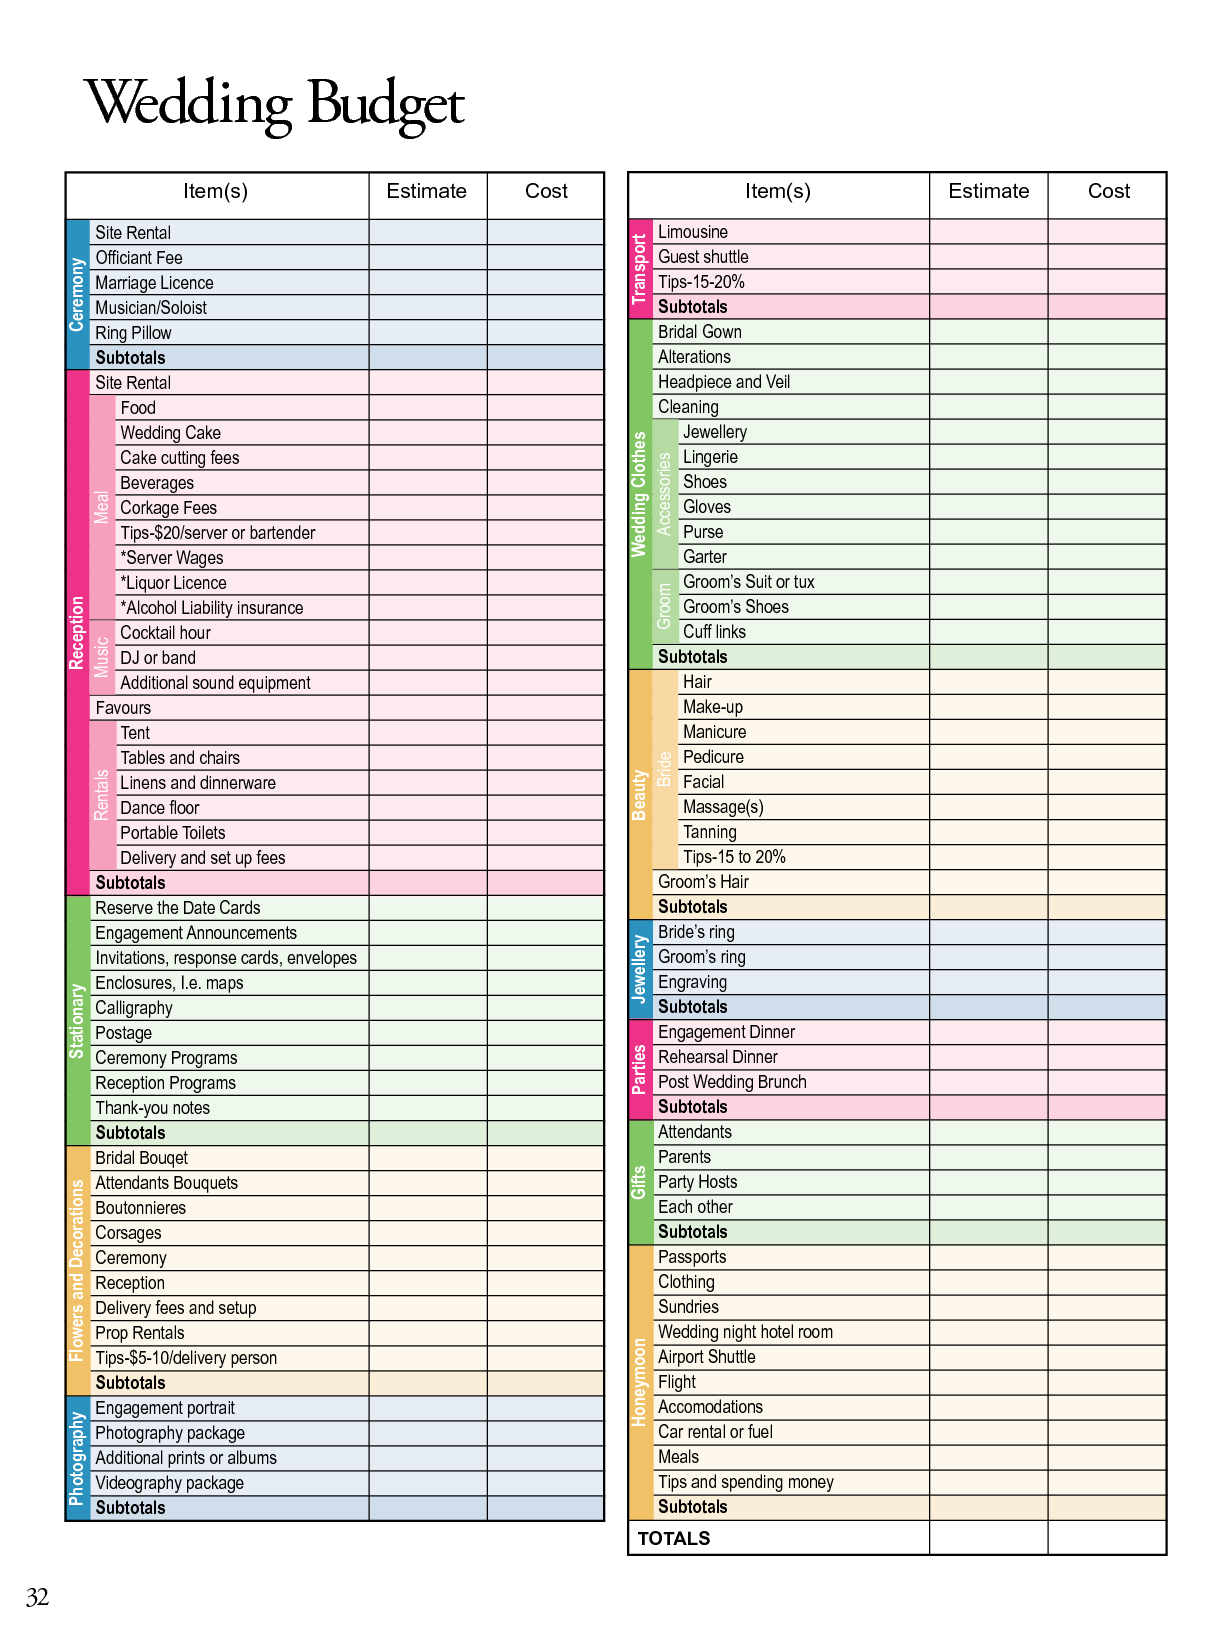 Wedding Planning Checklist Excel Spreadsheet within Wedding Planning